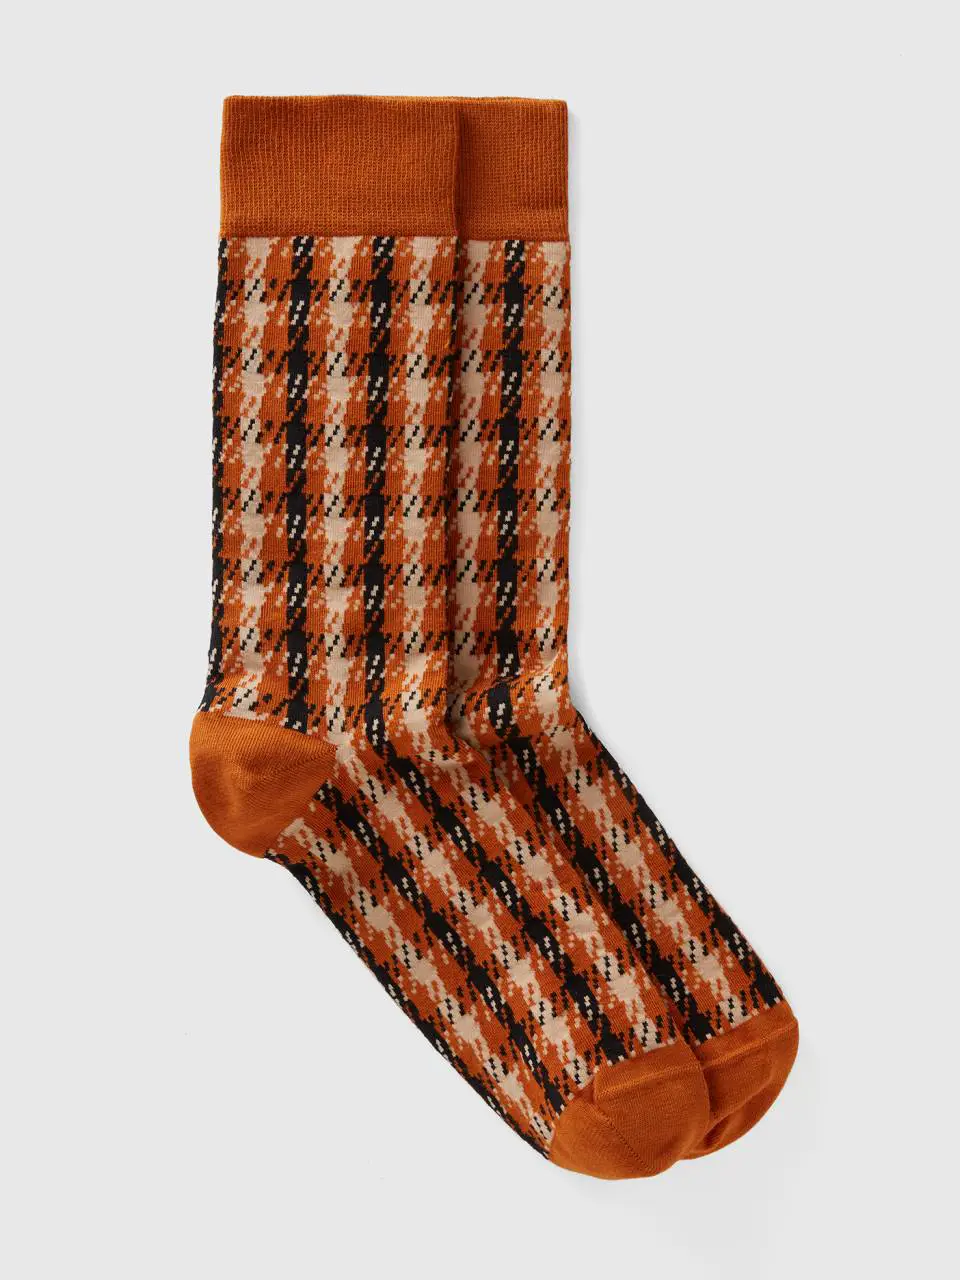 Benetton long check camel socks. 1